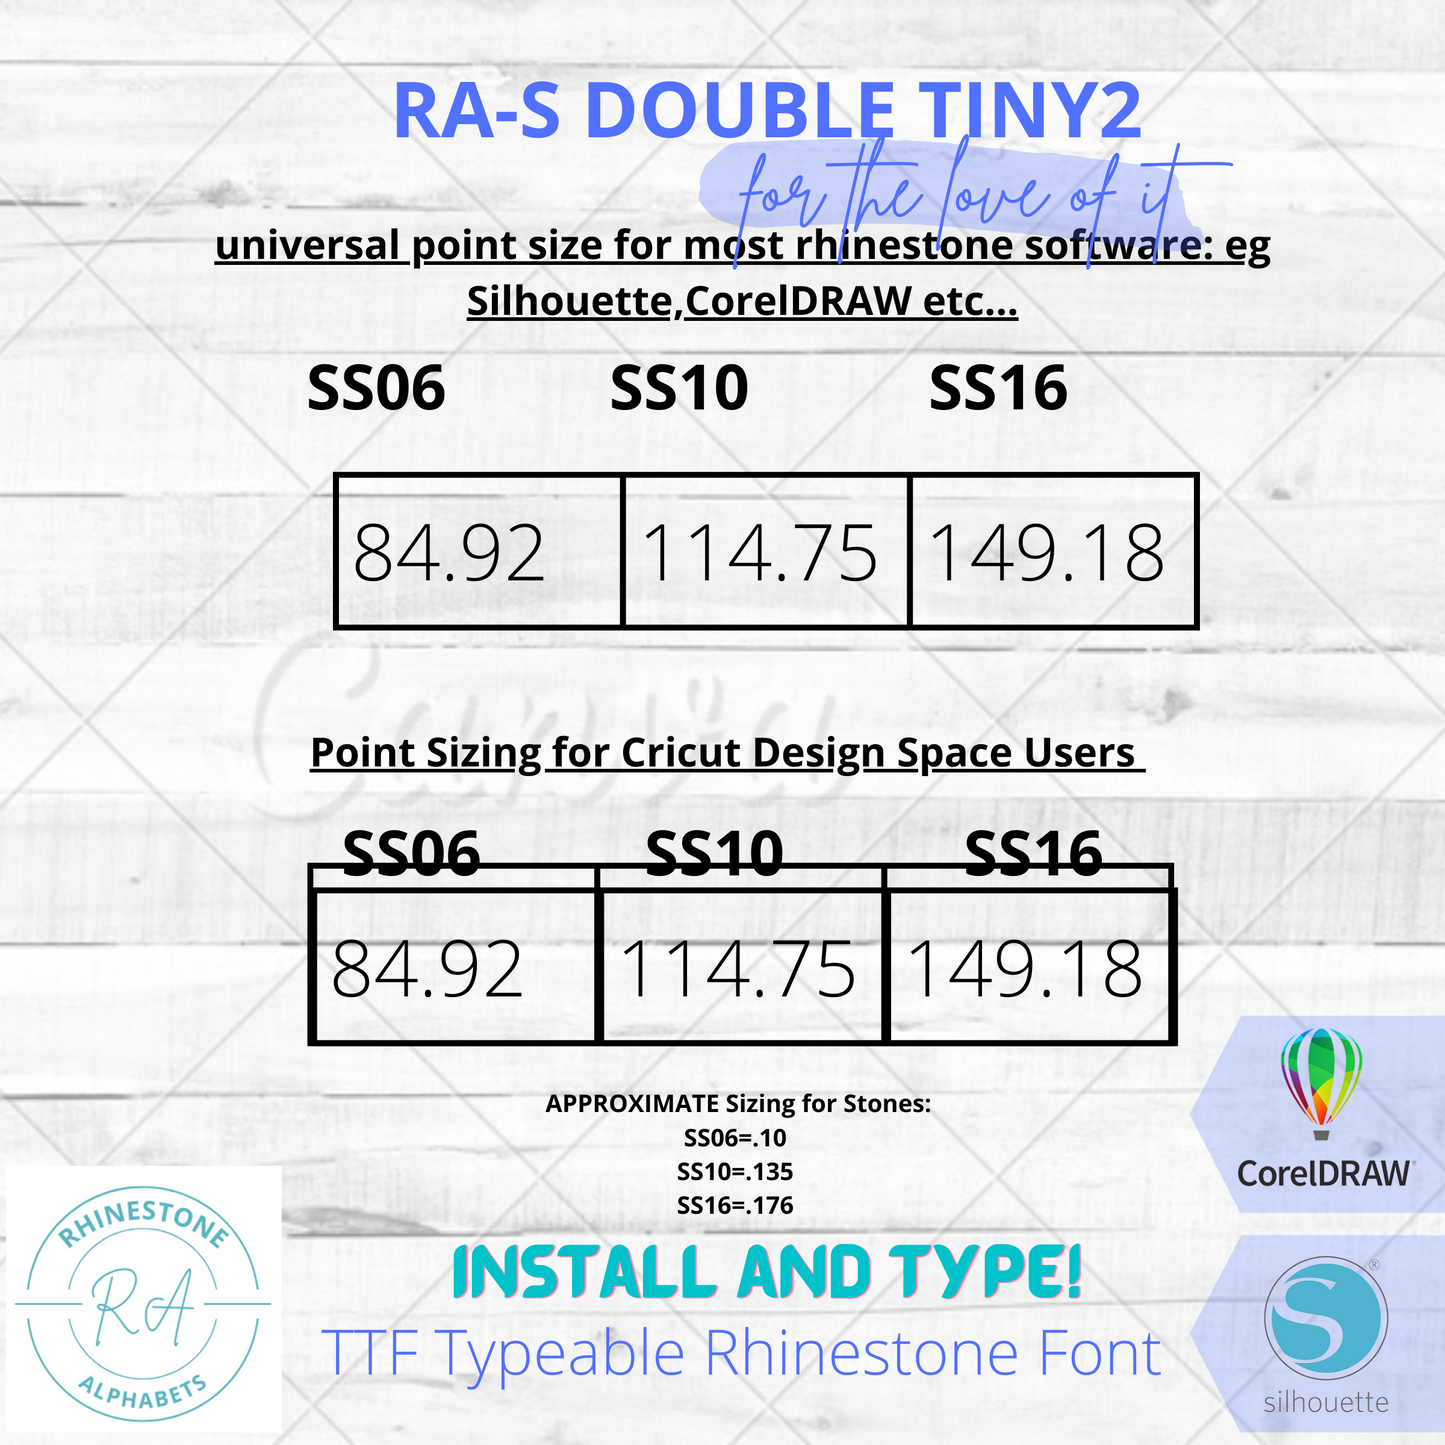 RA-S Double Tiny 2